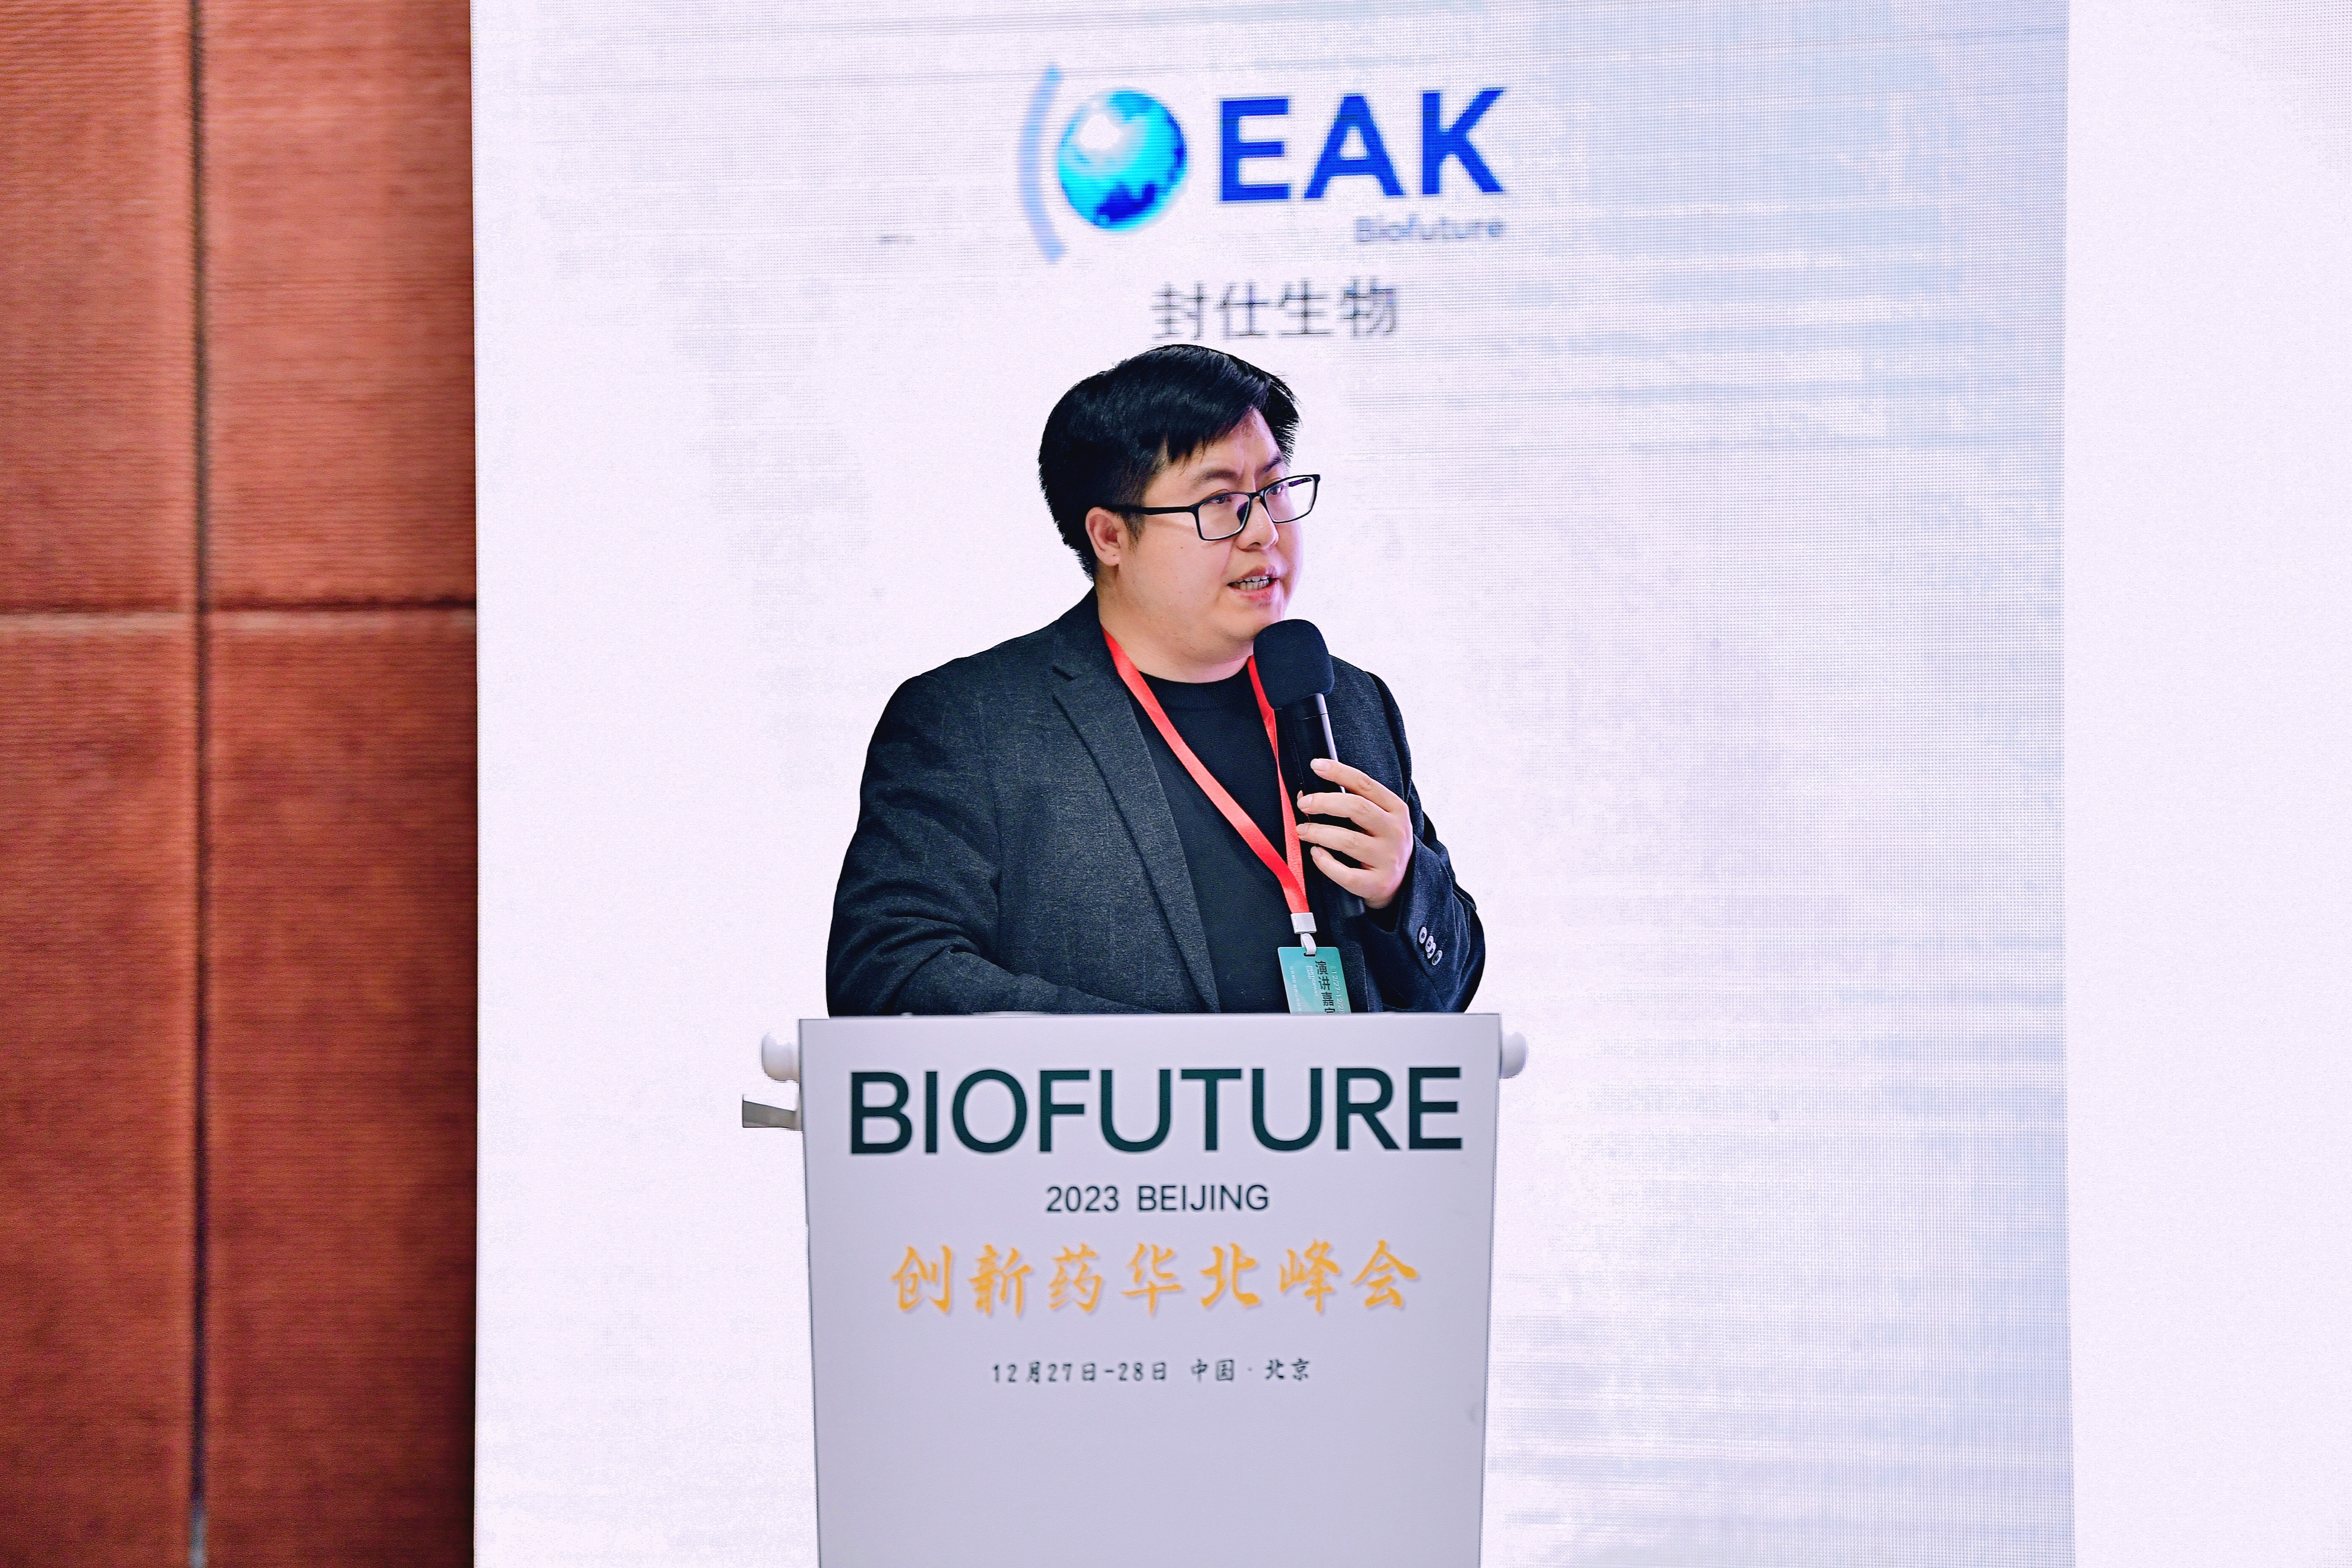 希格生科代长贵博士受邀在BioFuture创新药华北峰会发表演讲